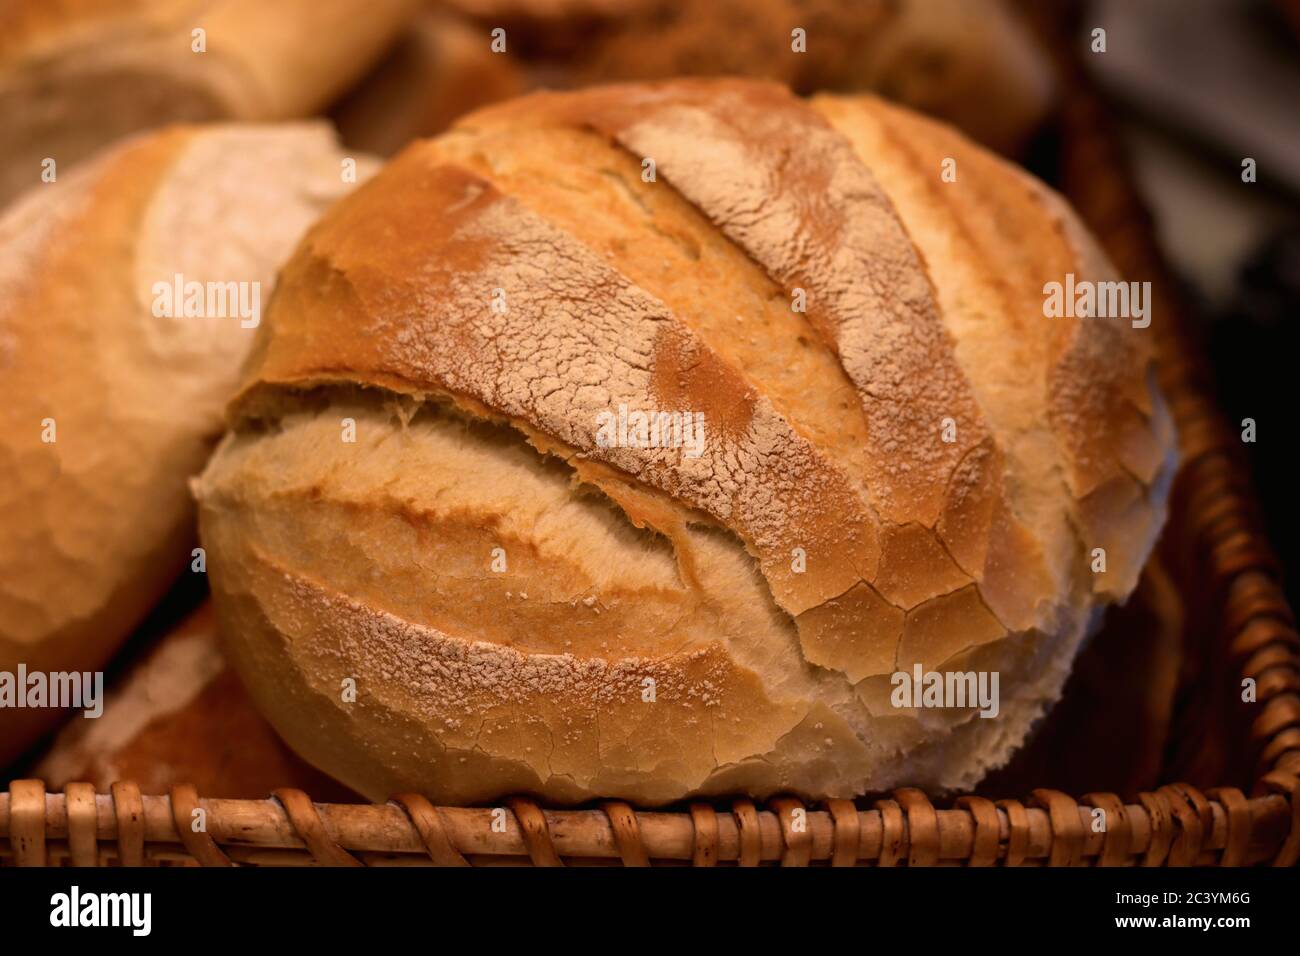 gros plan sur le pain au levain Banque D'Images